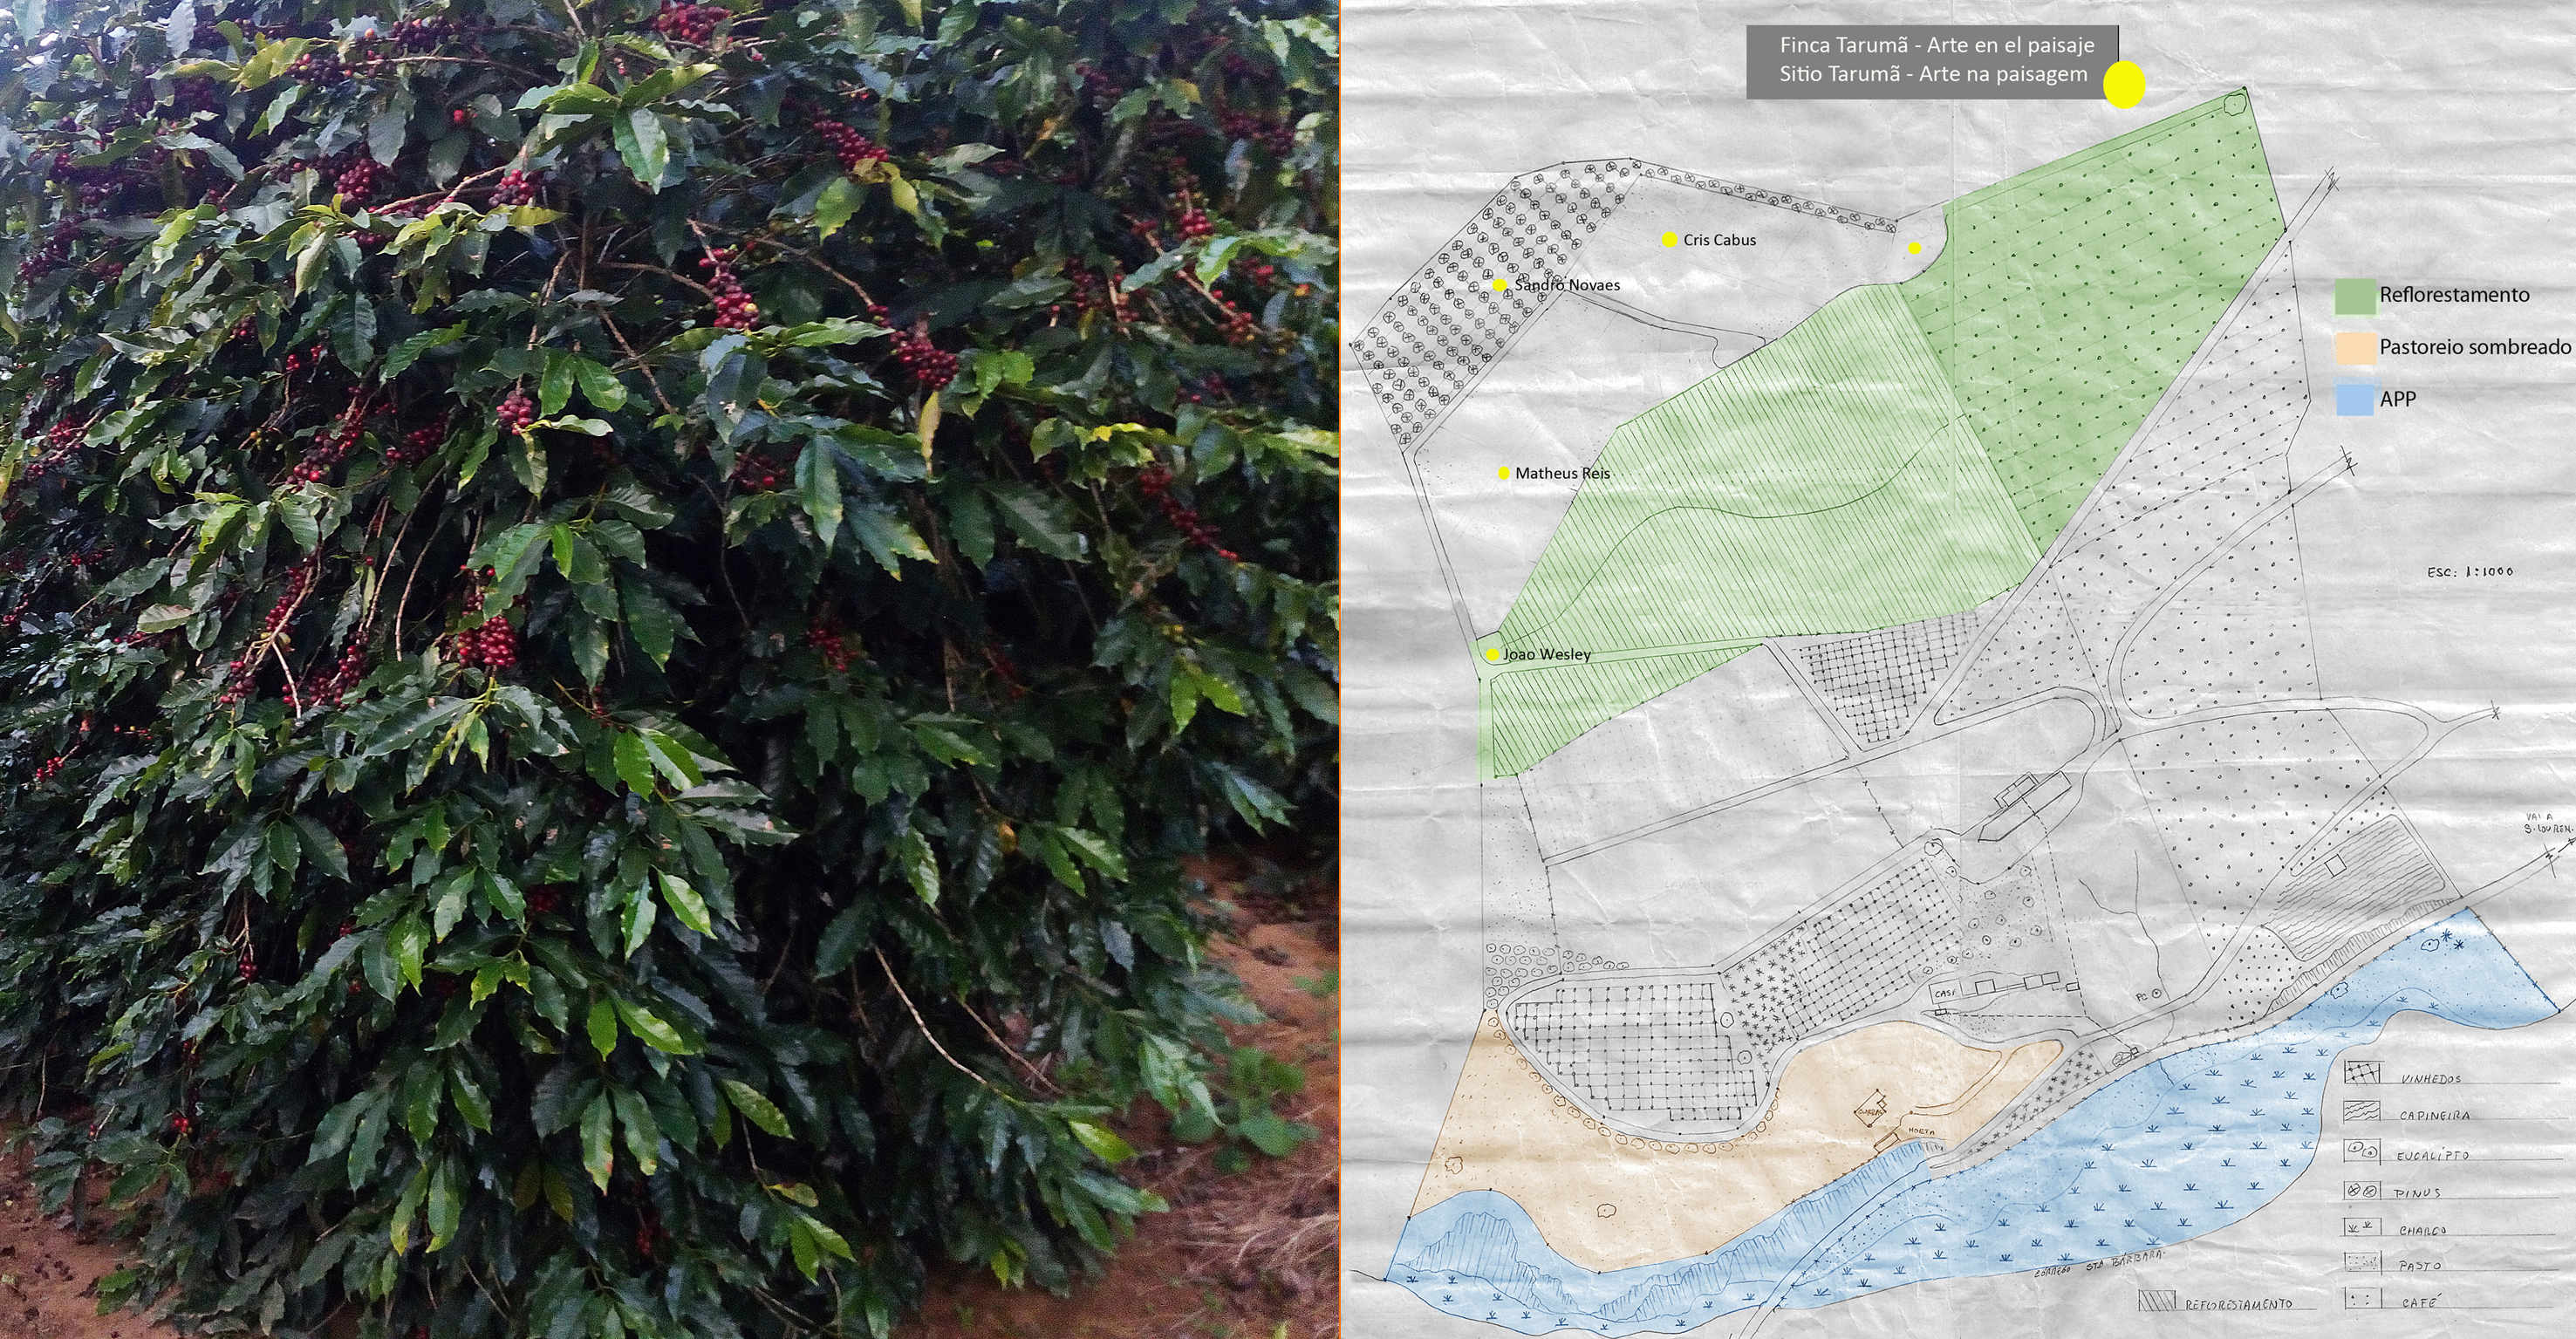 Área de café de Catucaí a ser reflorestada visando café sombreado sob a mata.